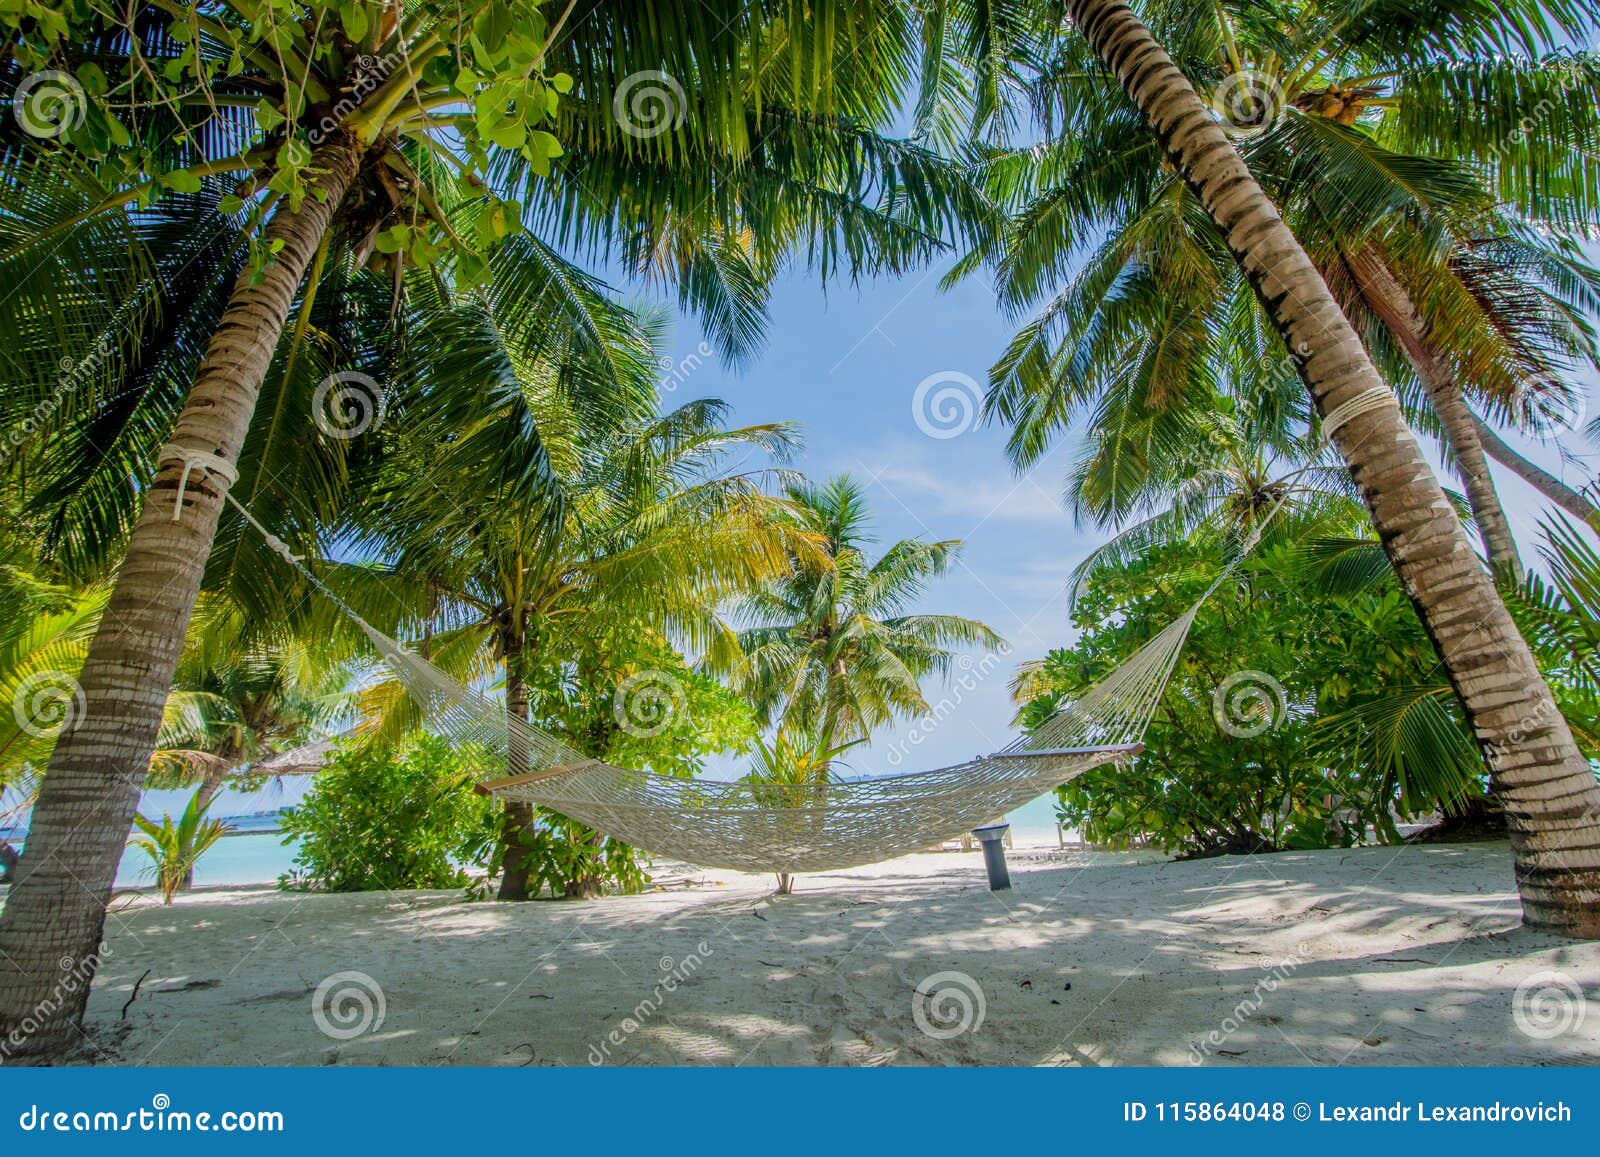 Hammock at the Beautiful Tropical Beach at Maldives Stock Photo - Image ...